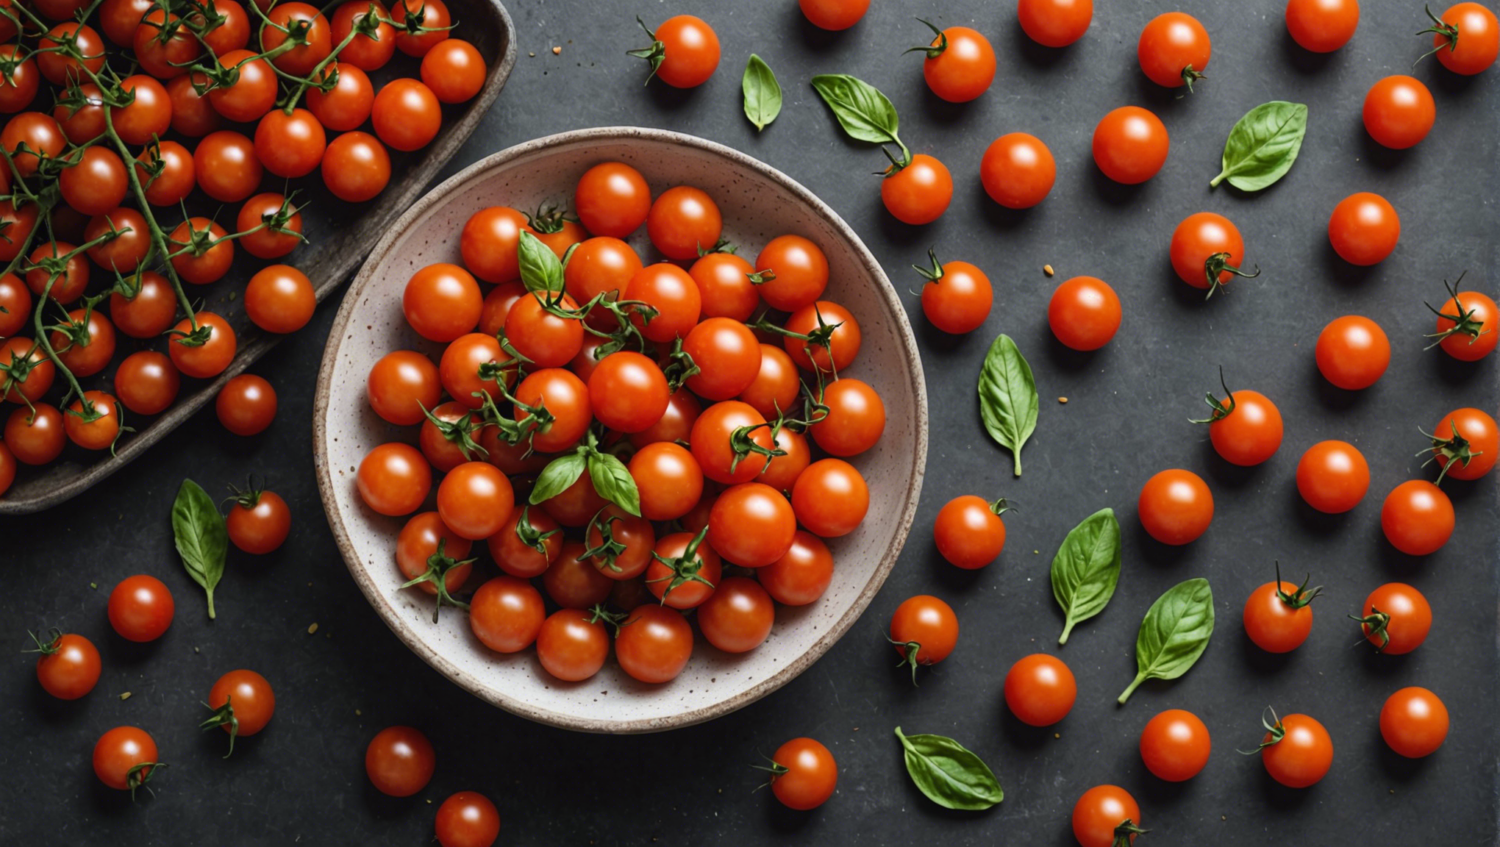 découvrez mes 3 recettes coup de cœur pour sublimer les délicieuses tomates cerises. des plats simples et savoureux qui mettront en valeur toutes les saveurs de ce fruit d'été.